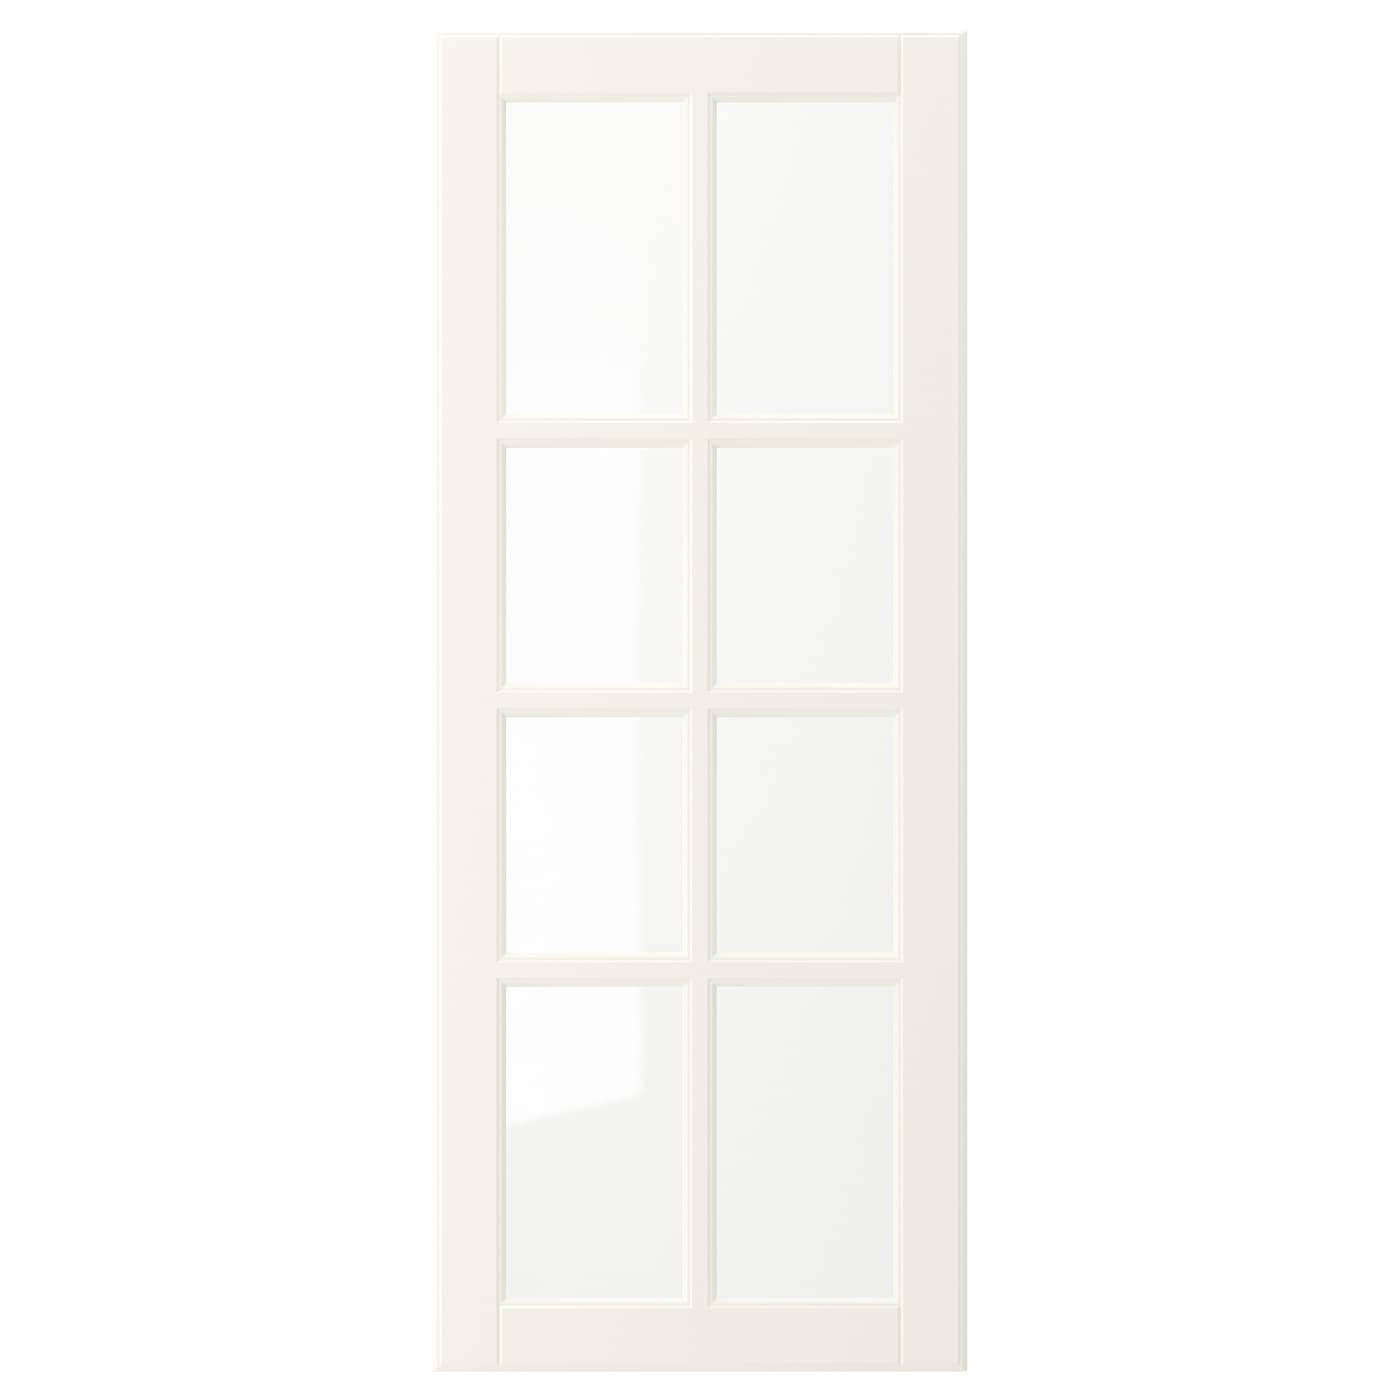 Дверца со стеклом - IKEA BODBYN, 100х40 см, кремовый, БУДБИН ИКЕА